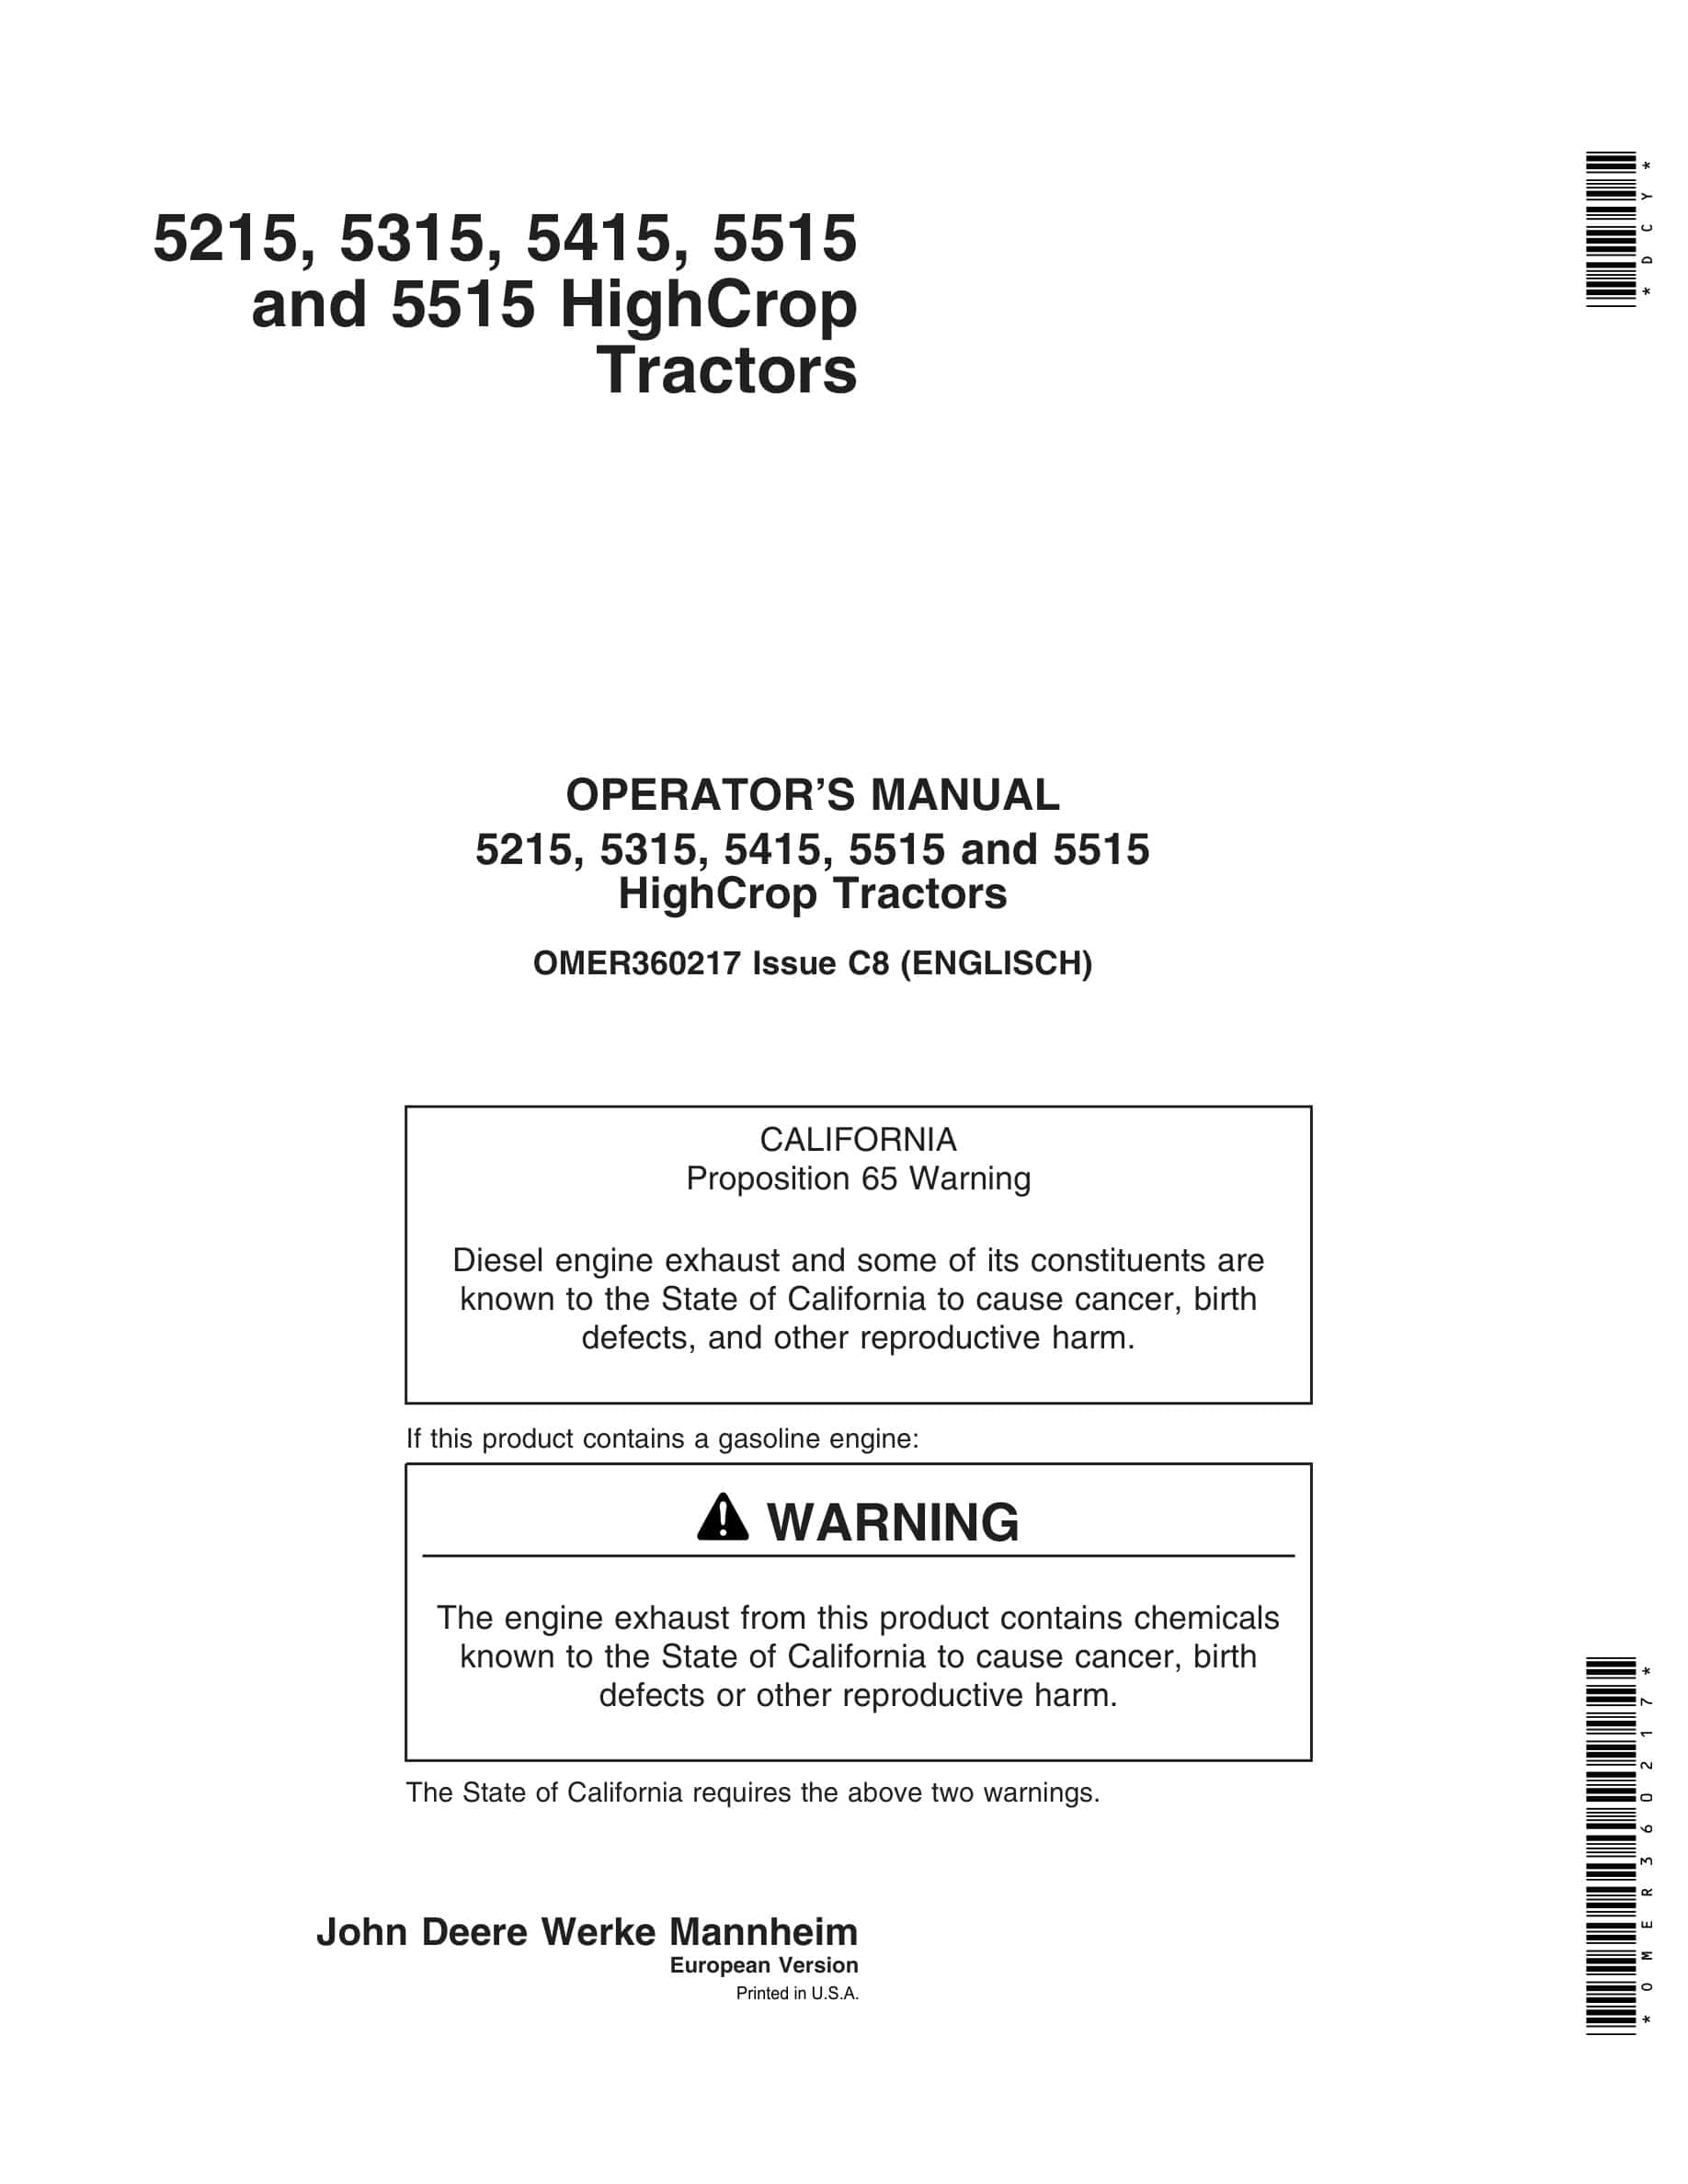 John Deere 5215, 5315, 5415, 5515 And 5515 Highcrop Tractors Operator Manuals OMER360217-1